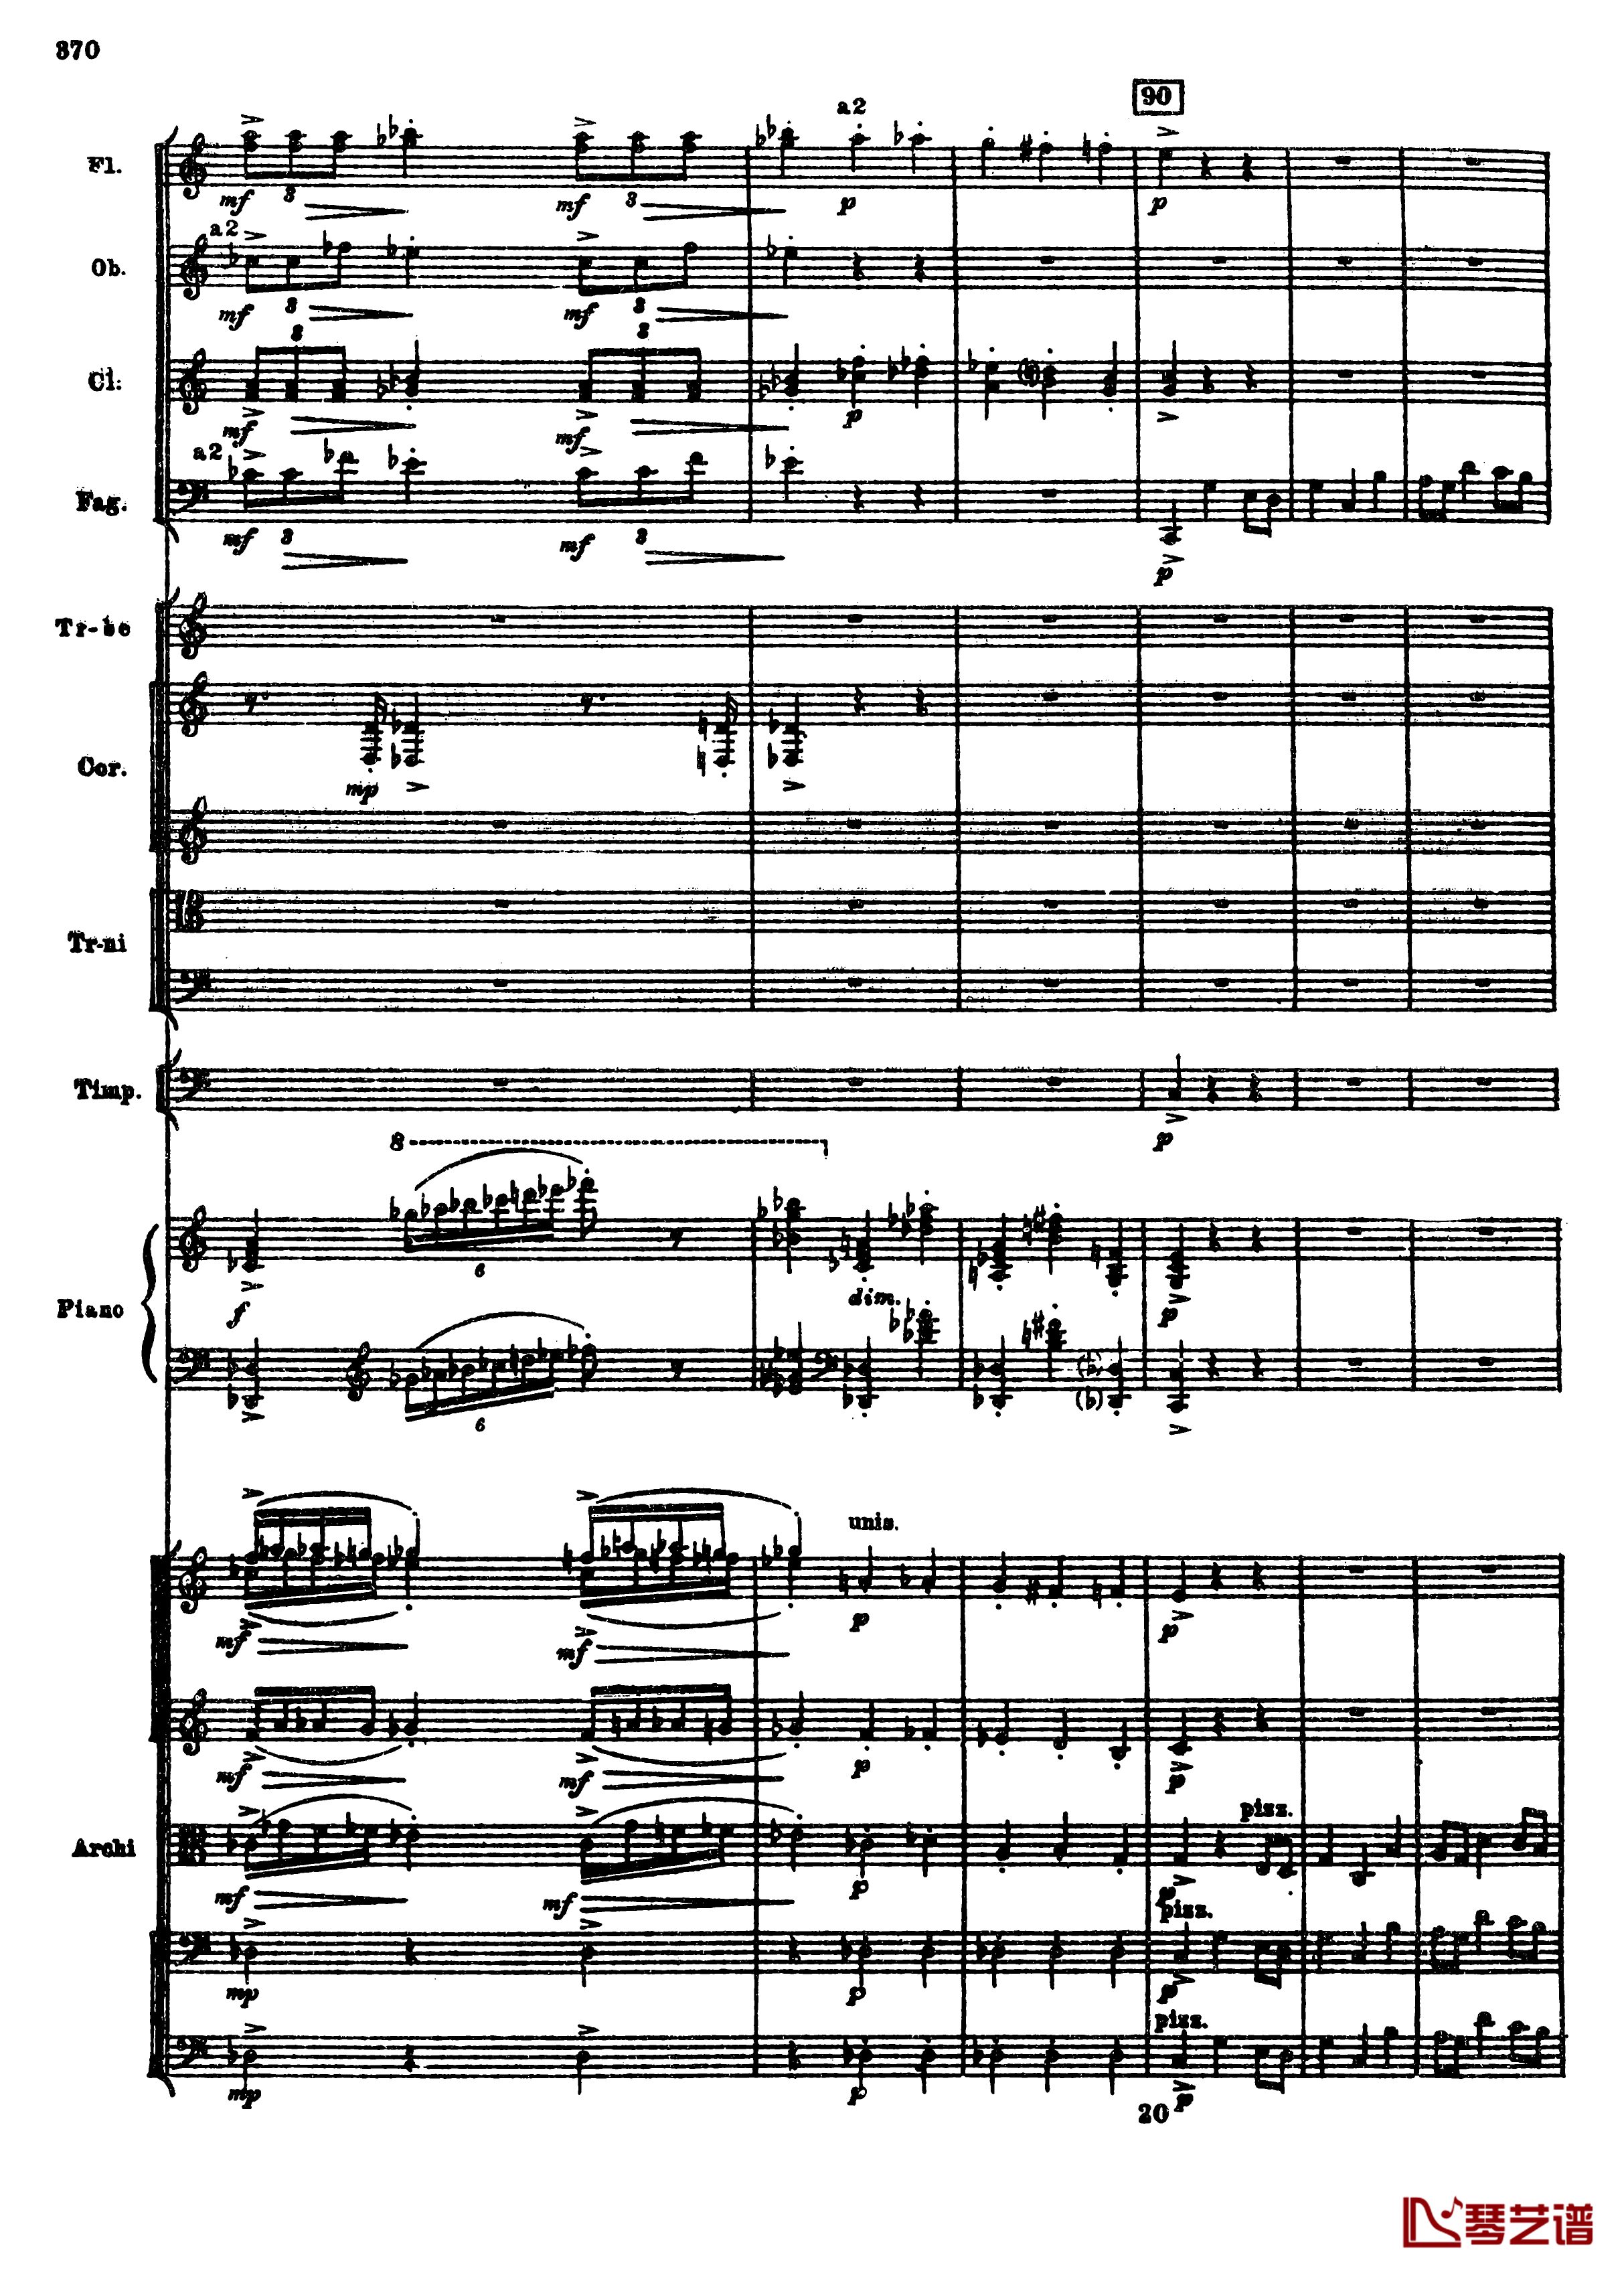 普罗科菲耶夫第三钢琴协奏曲钢琴谱-总谱-普罗科非耶夫102